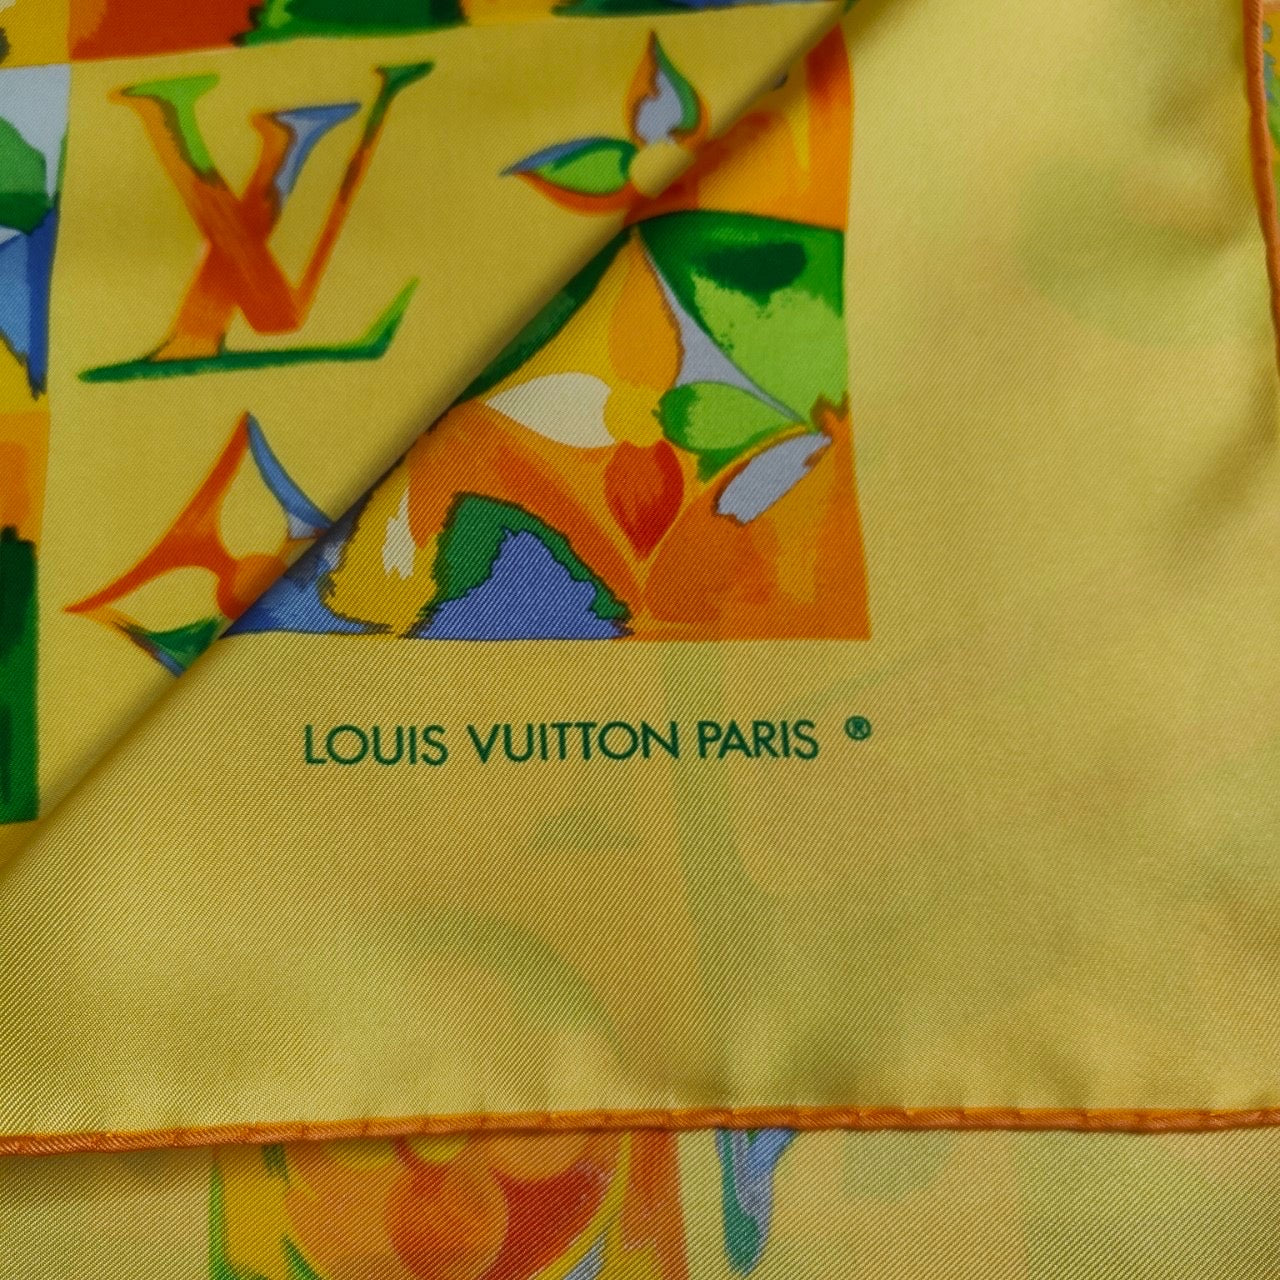 Louis Vuitton Paris